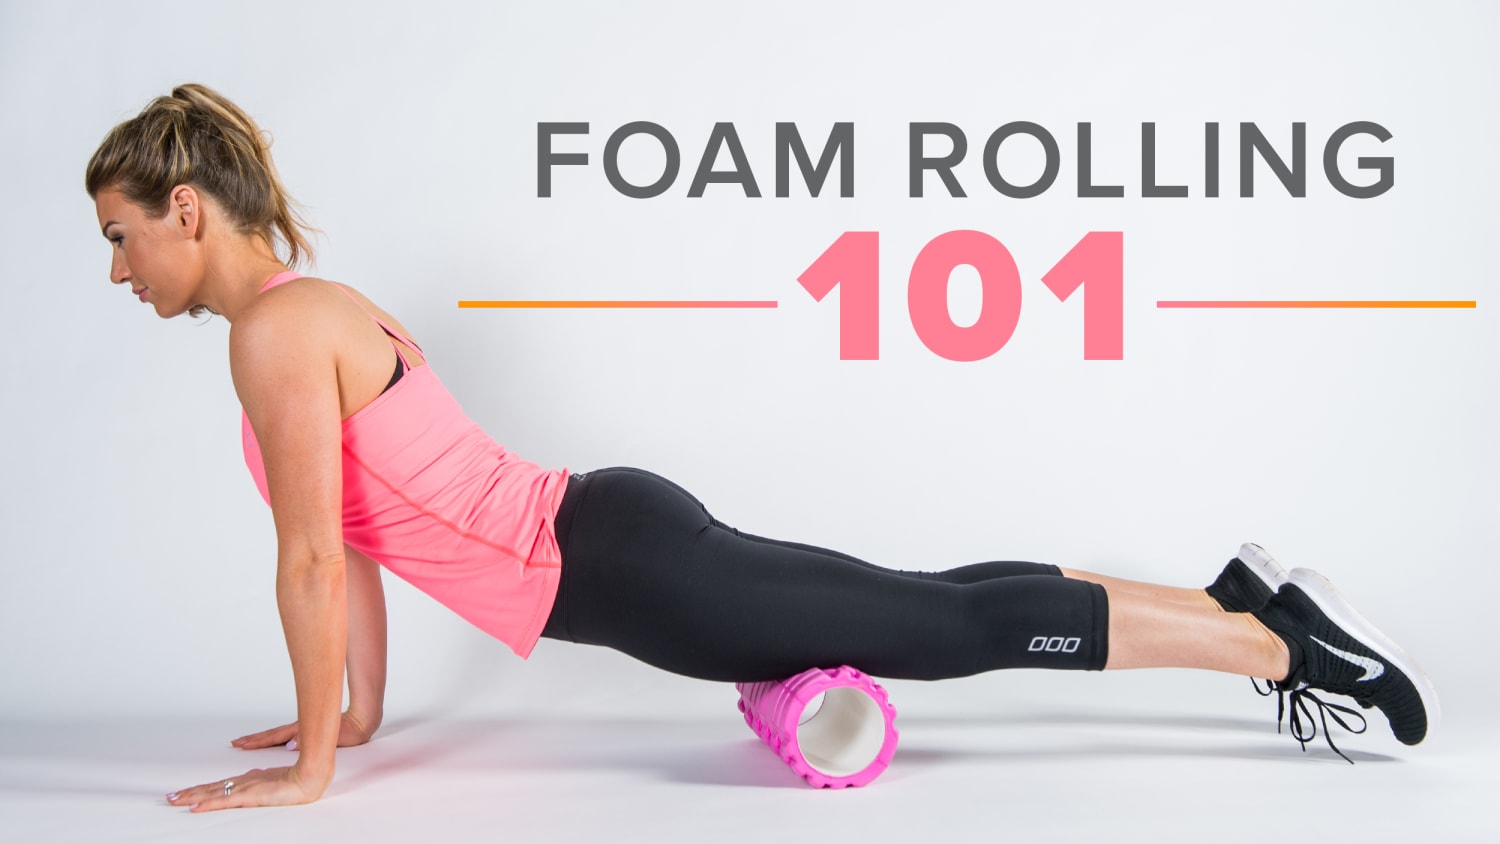 Should You Try Foam Rolling?